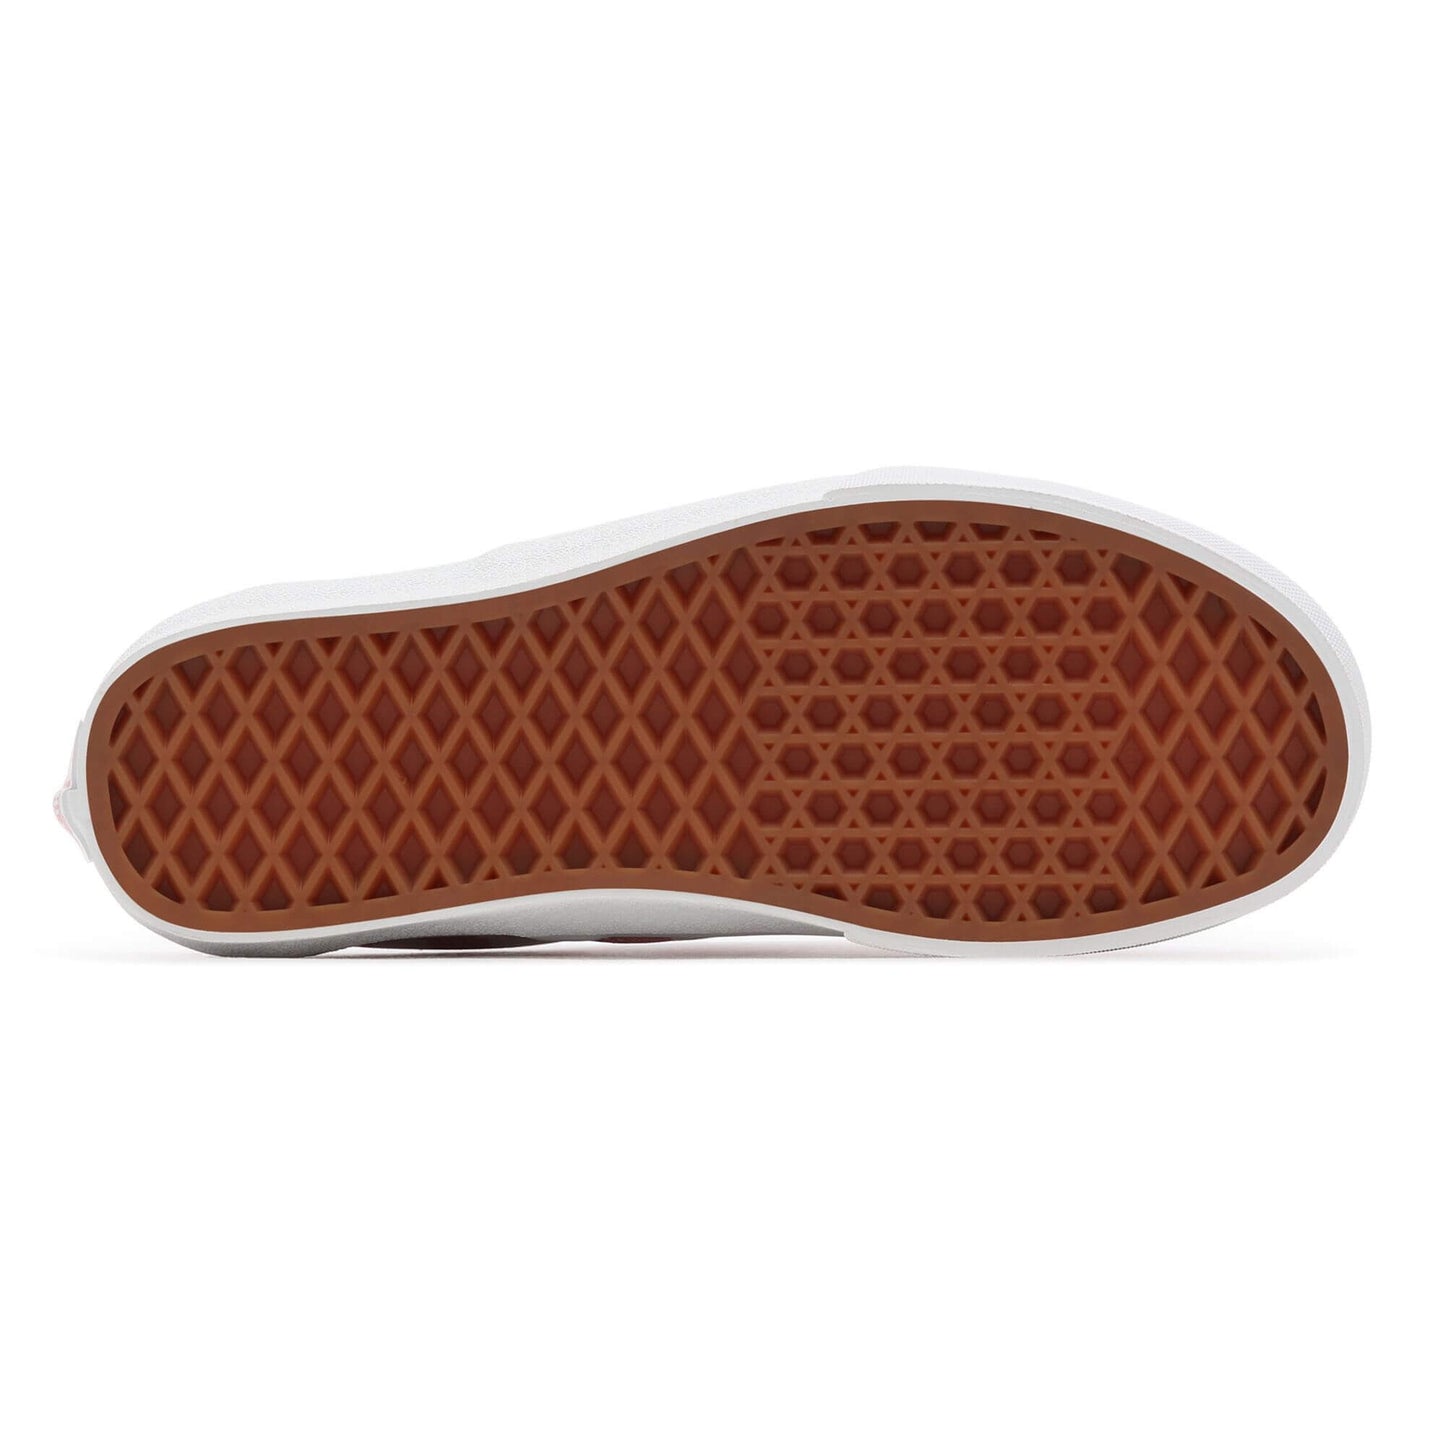 Vans Gingham Classic Slip-On Shoes (Gingham) Rosette/True White